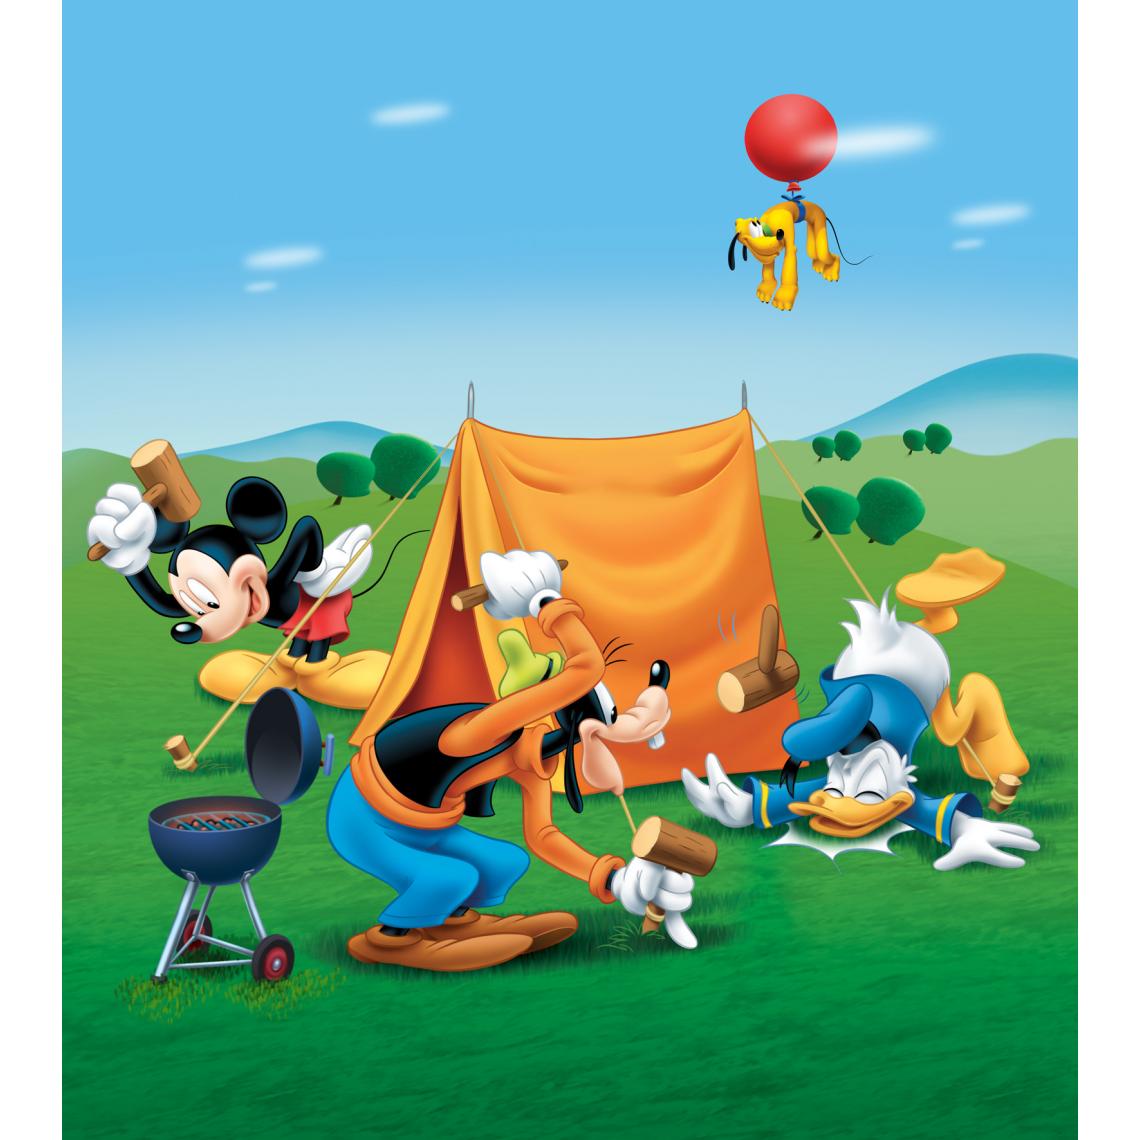 Disney Montres - Disney papier peint panoramique Mickey Mouse bleu, vert et orange - 600610 - 180 x 202 cm - Papier peint